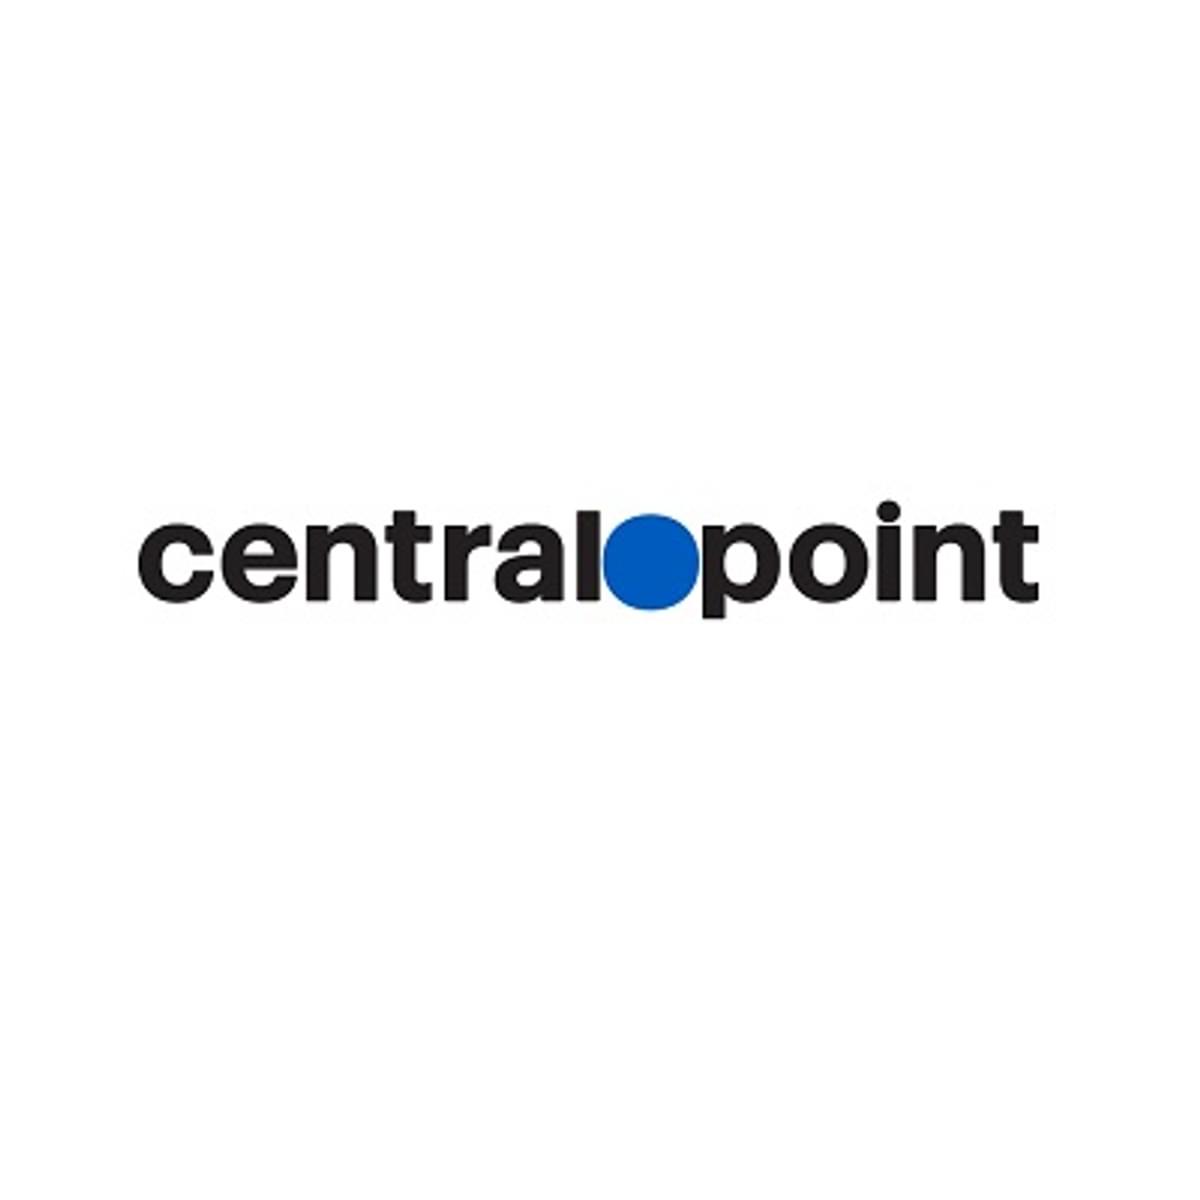 Centralpoint wint aanbesteding provincies voor circulaire inkoop telecommunicatie image